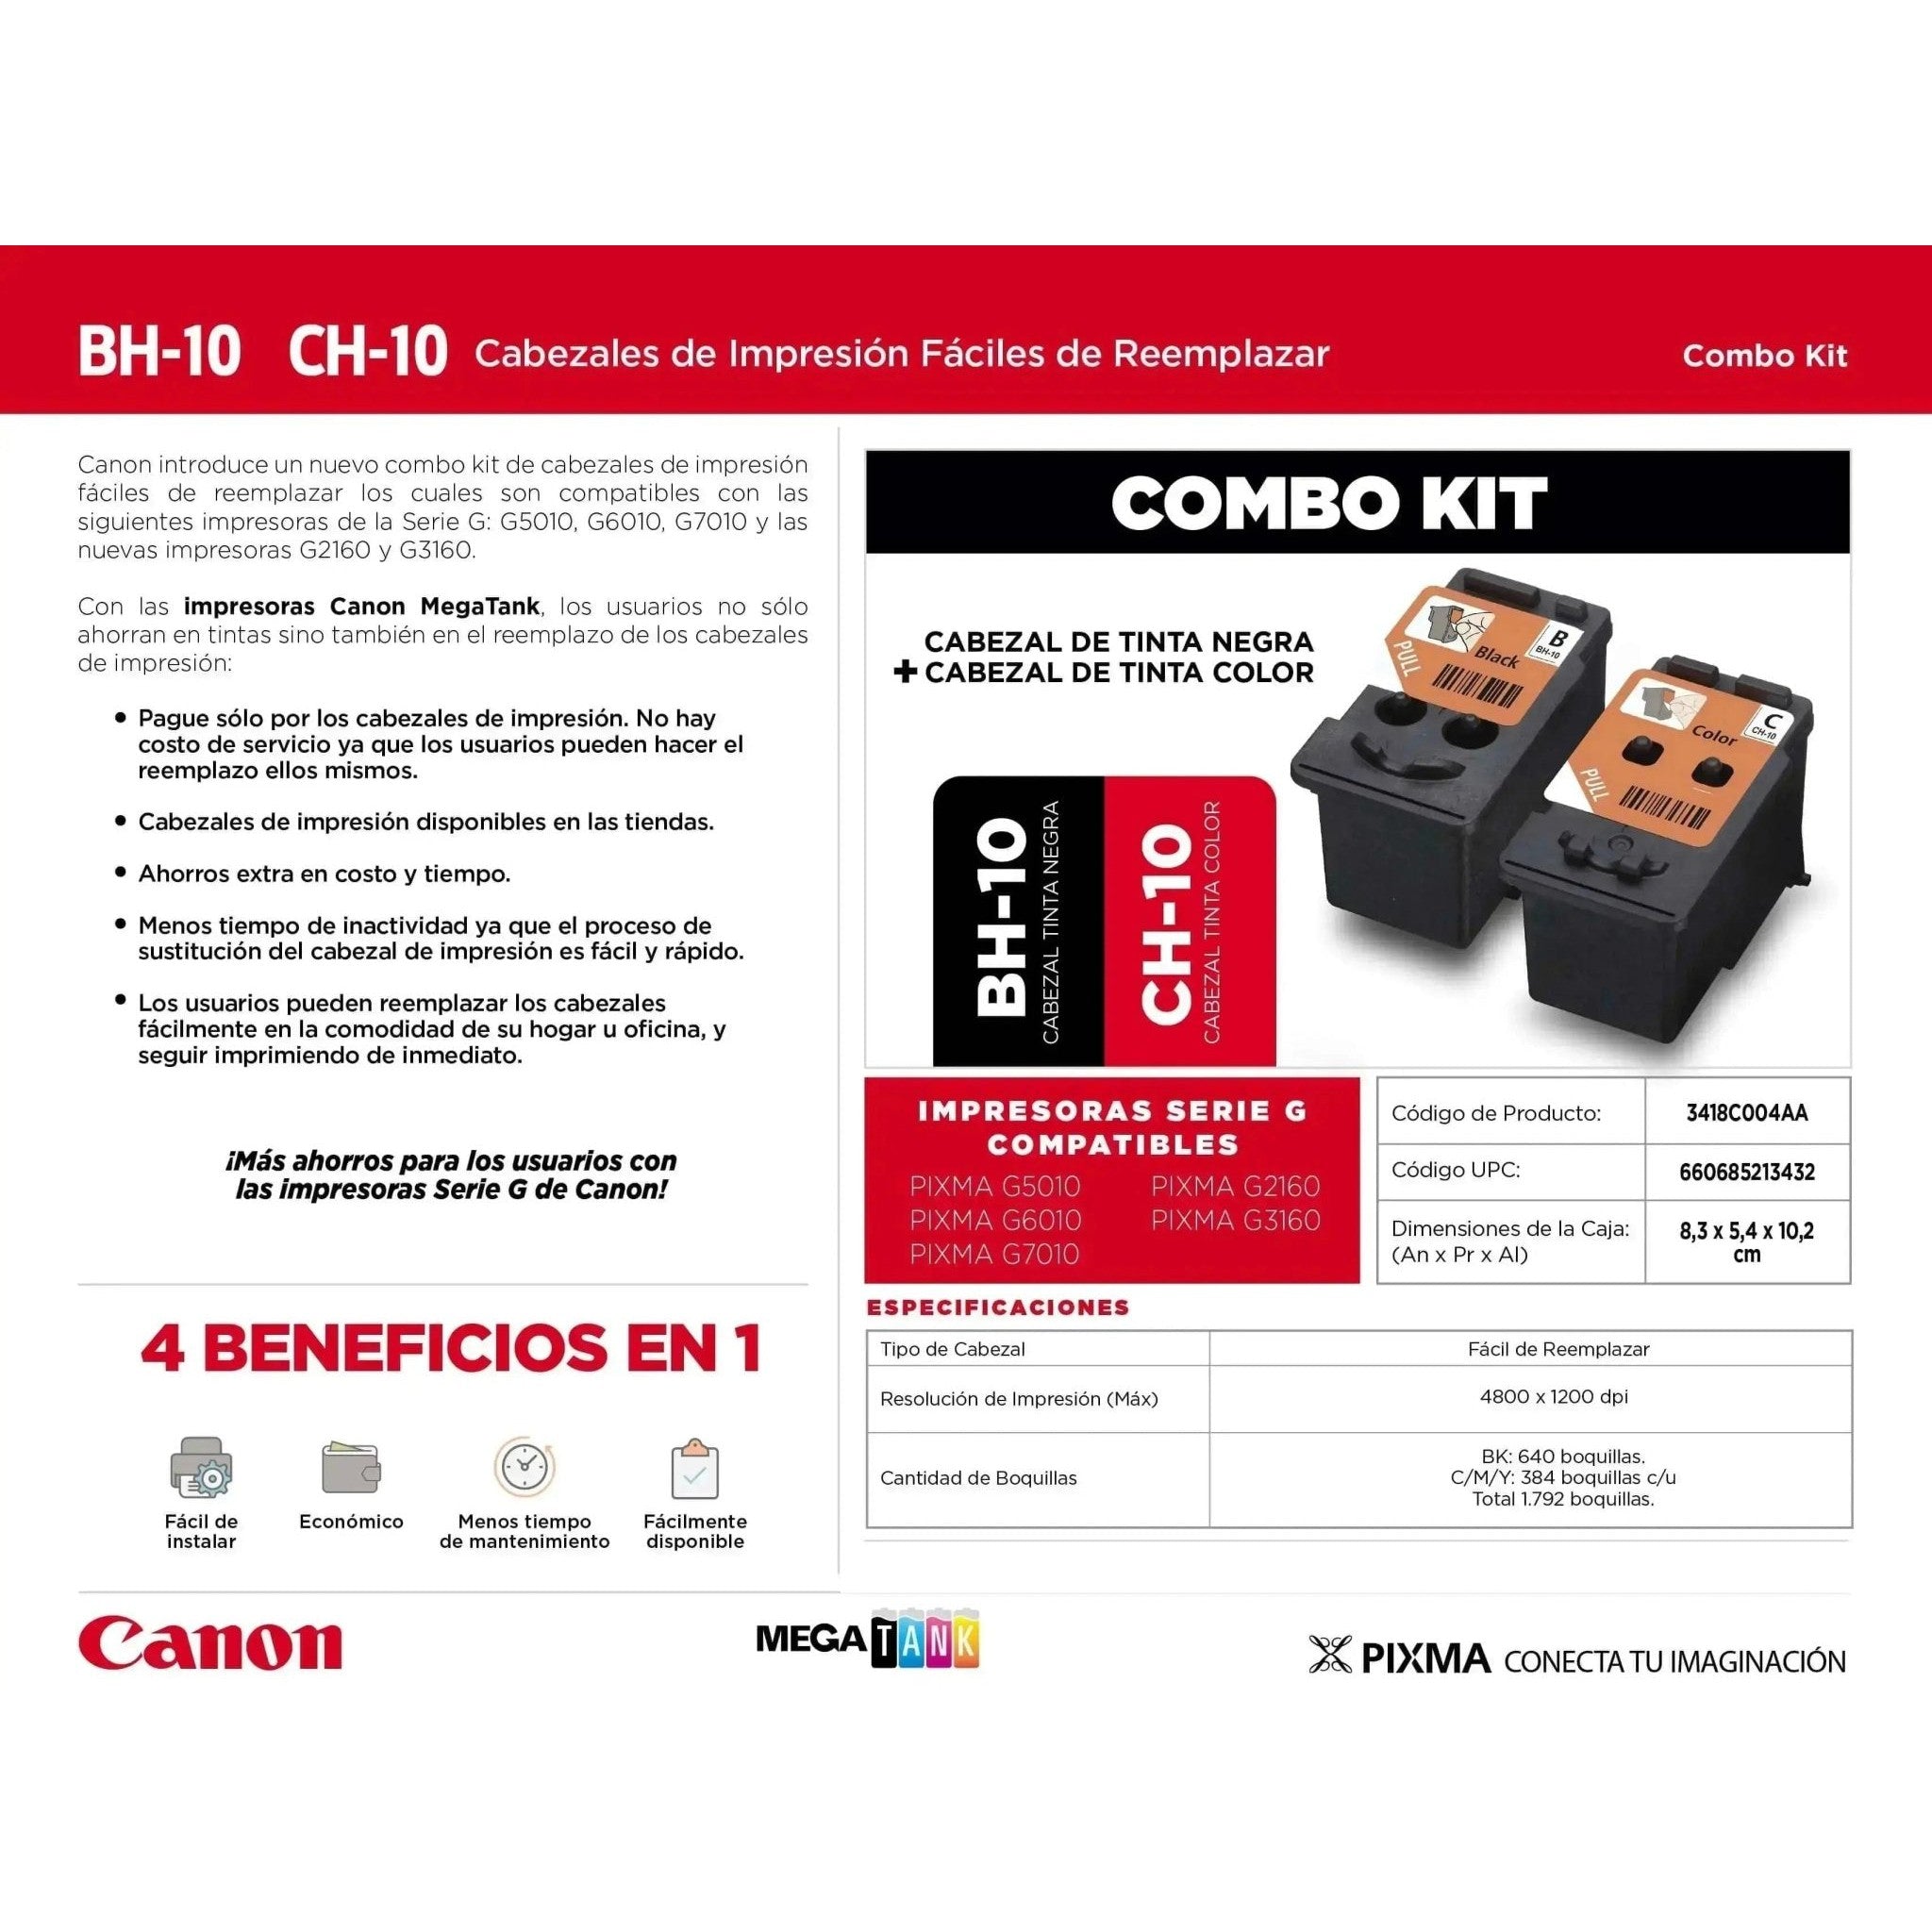 Cabezal Canon BH-10 + CH-10 | G2160 G3160 para Impresoras Canon